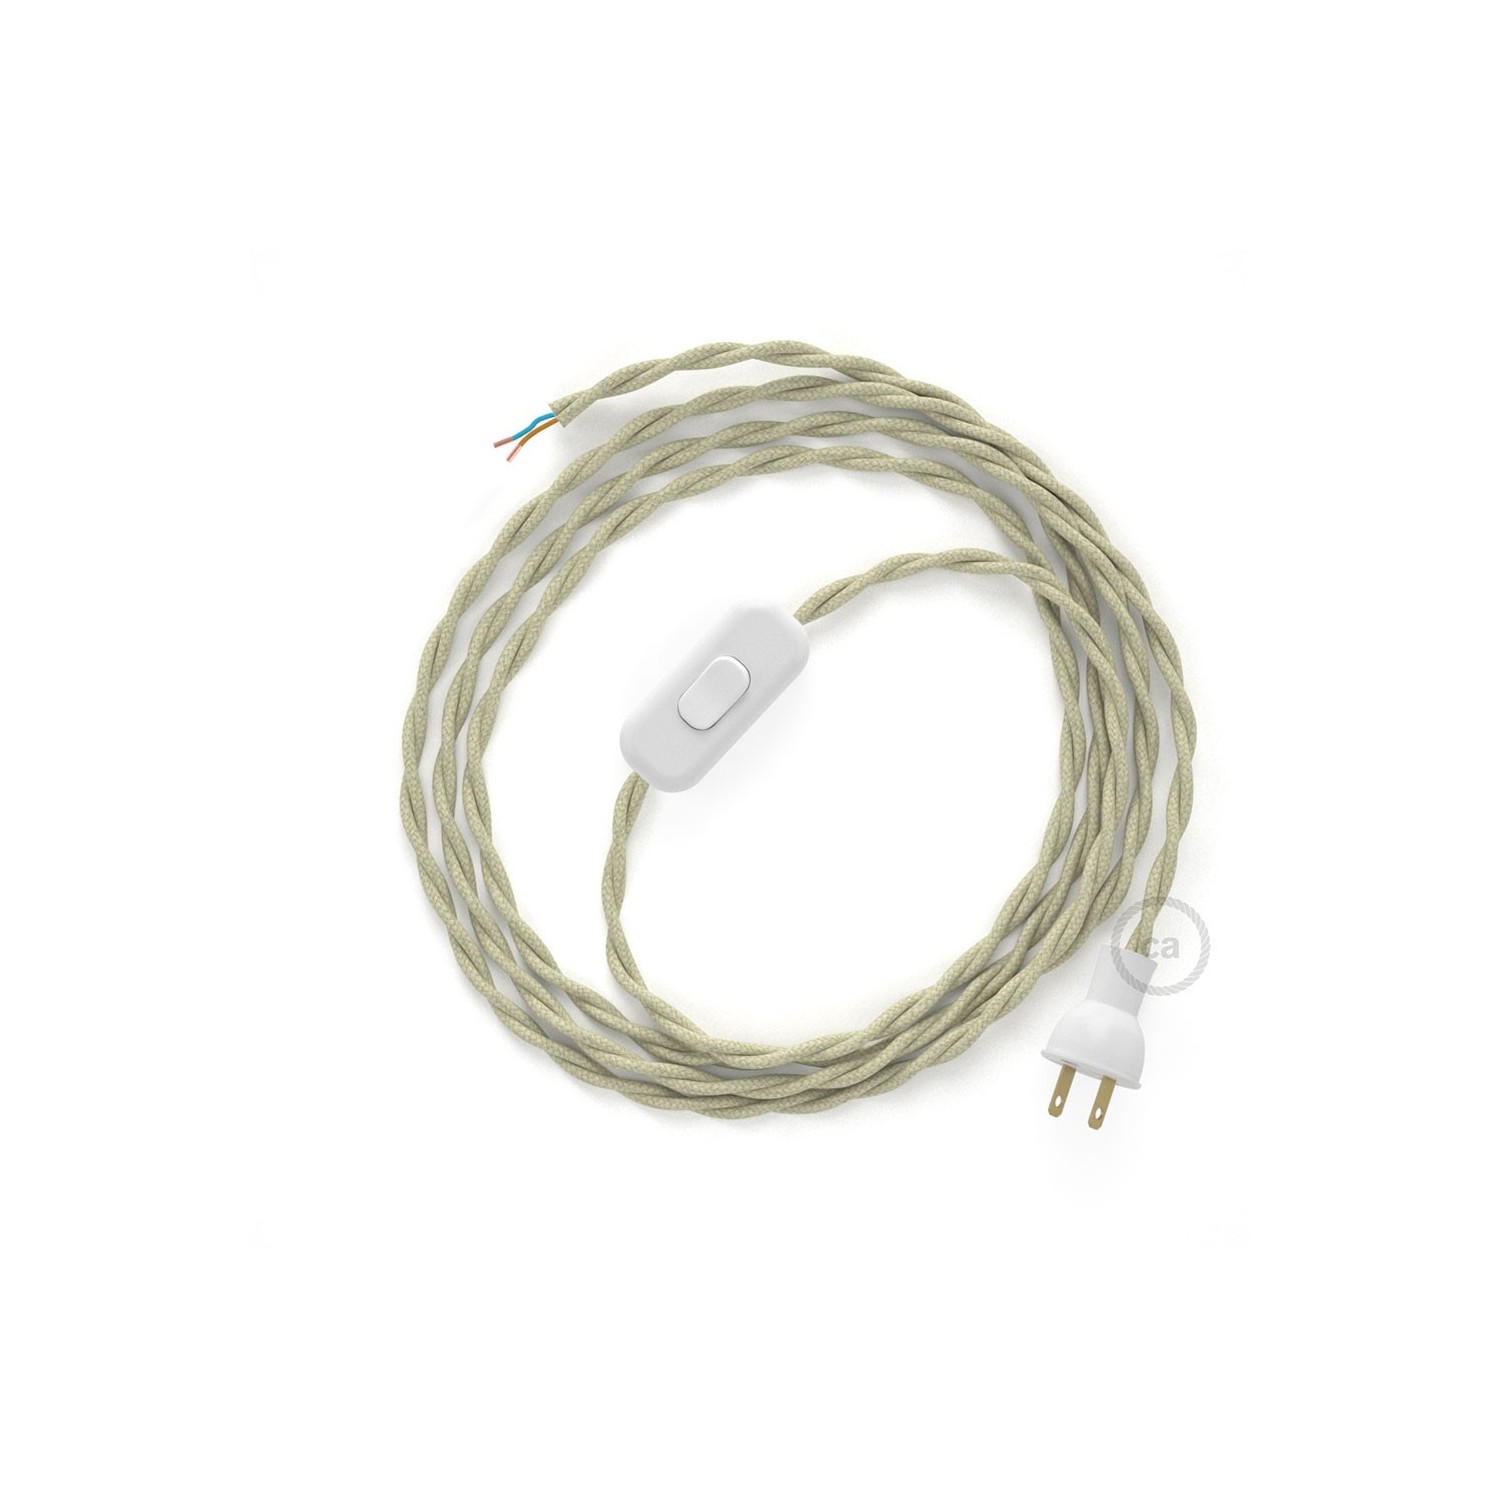 Cableado para lámpara de mesa, cable TC43 Algodón Gris Pardo 1,8 m. Elige el color de la clavija y del interruptor!